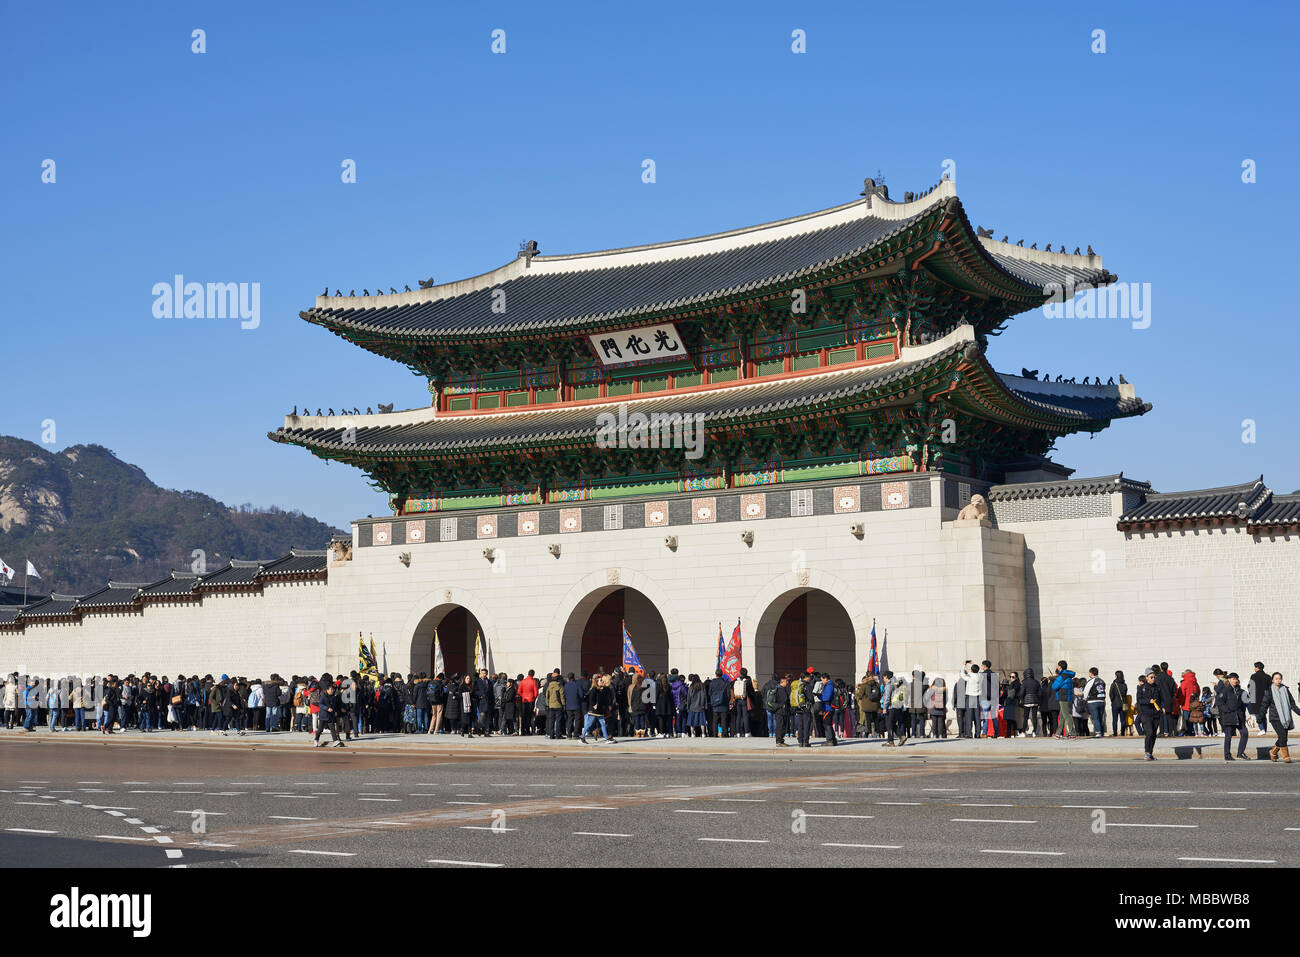 Seoul, Corea del Sud - 10 dicembre 2016: Gwanghwamun, è il cancello principale e la più grande porta del palazzo Gyeongbokgung che era il palazzo principale di dynast Joseon Foto Stock